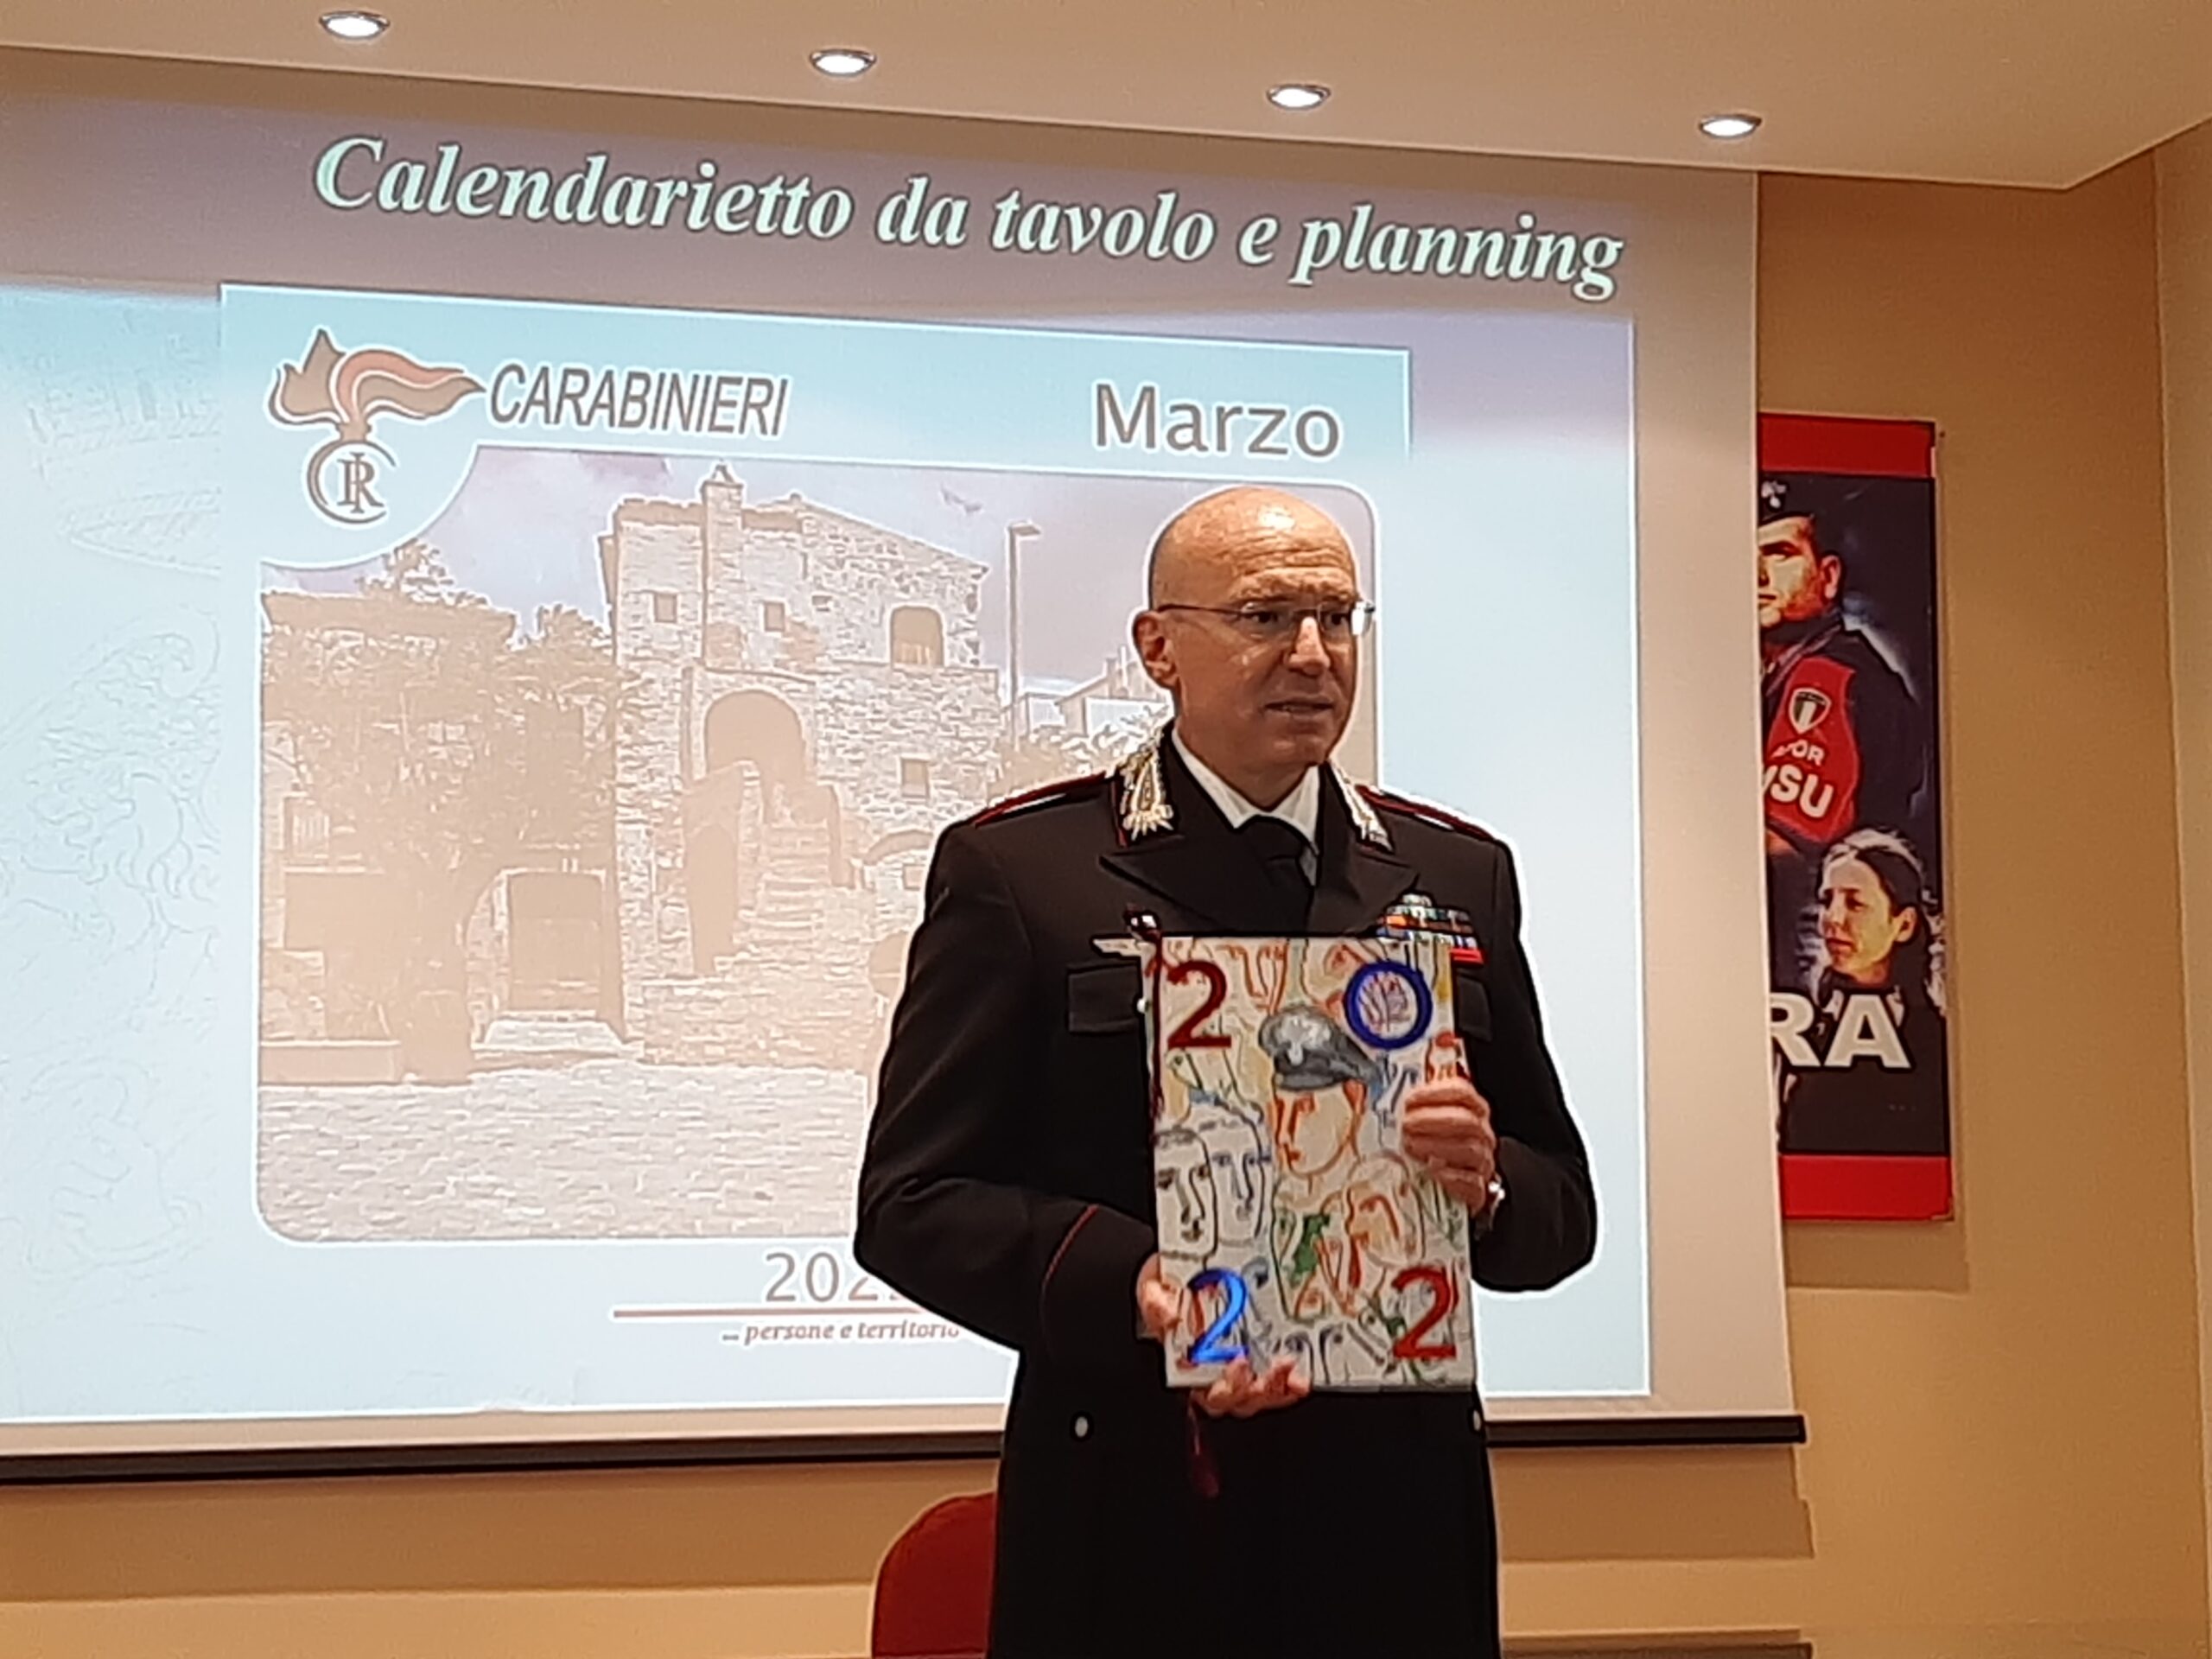 Carlo Lucarelli e il Maestro Sandro Chia per il Calendario Storico dell’Arma 2022. La città di Aliano nel calendario da tavolo